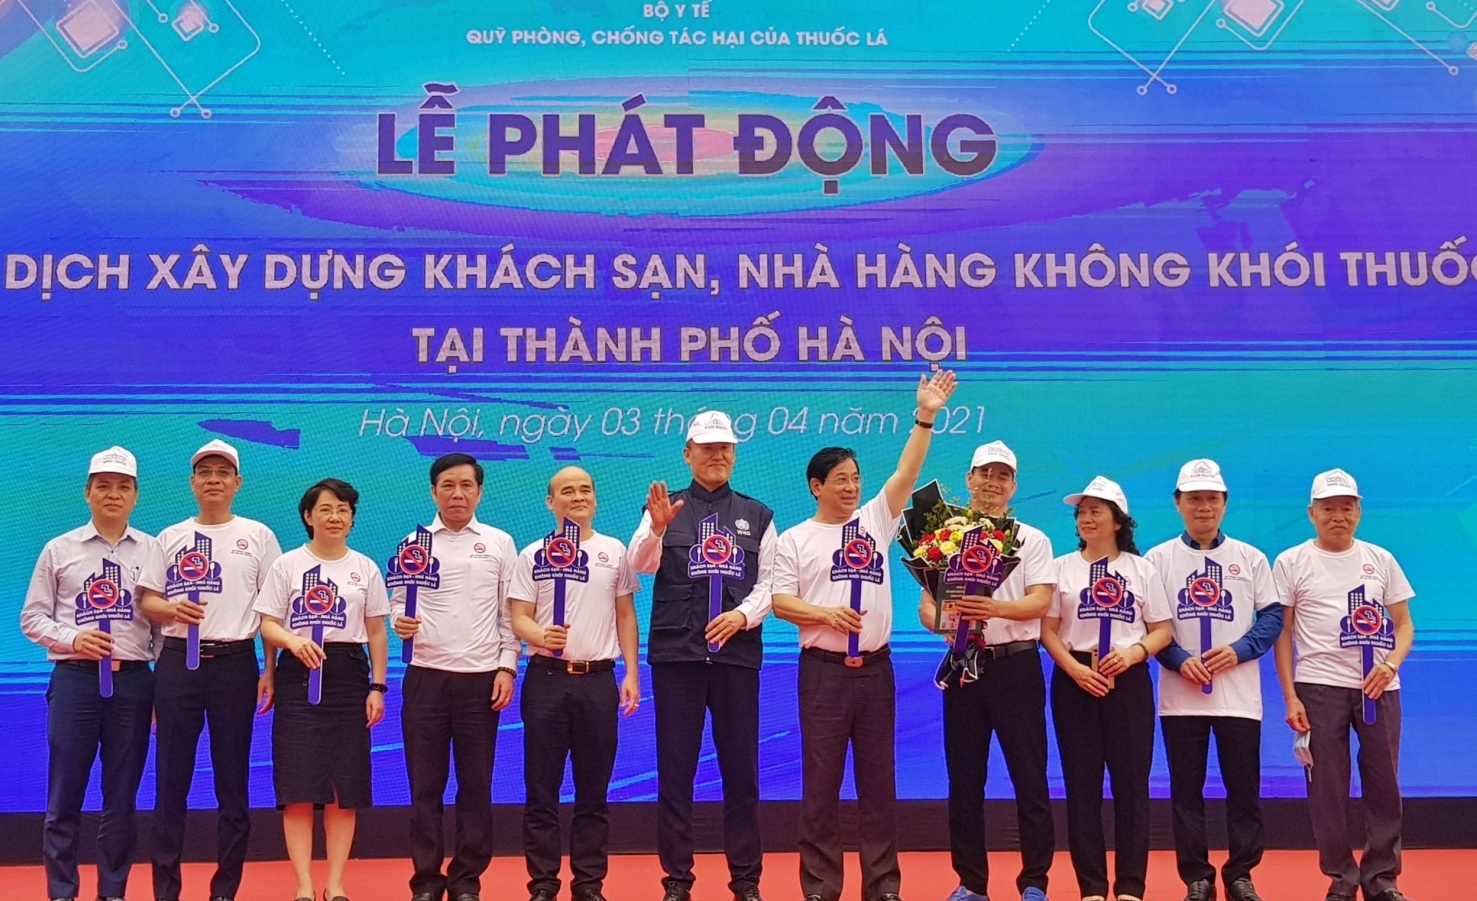 Hà Nội: 200 khách sạn, nhà hàng cam kết không khói thuốc